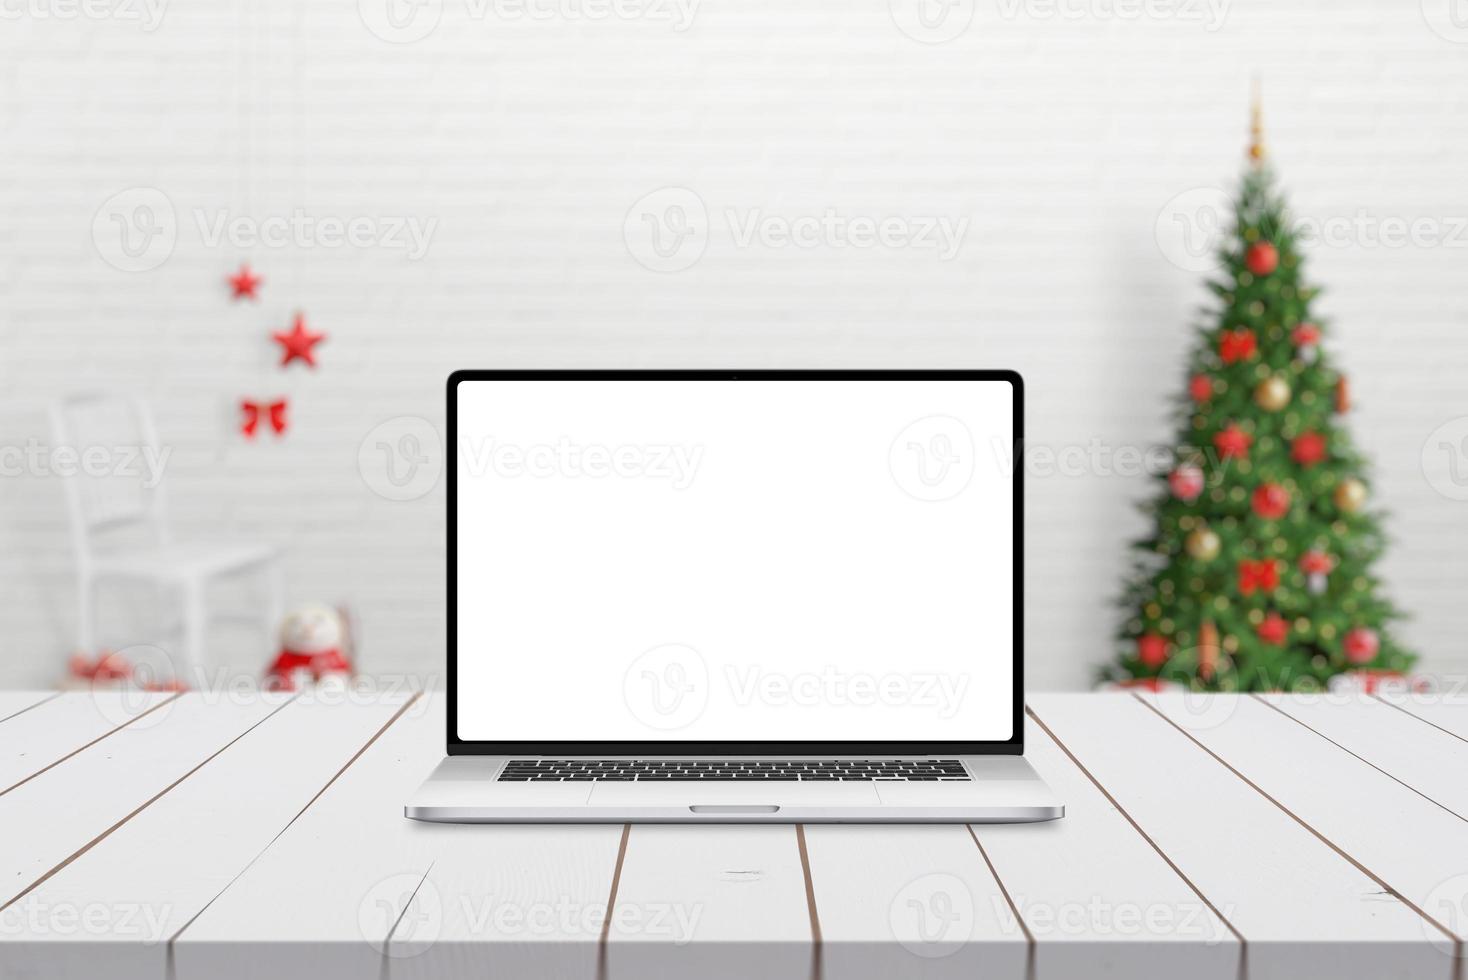 Maqueta de ordenador portátil en deskj de madera blanca con adornos navideños en segundo plano. foto